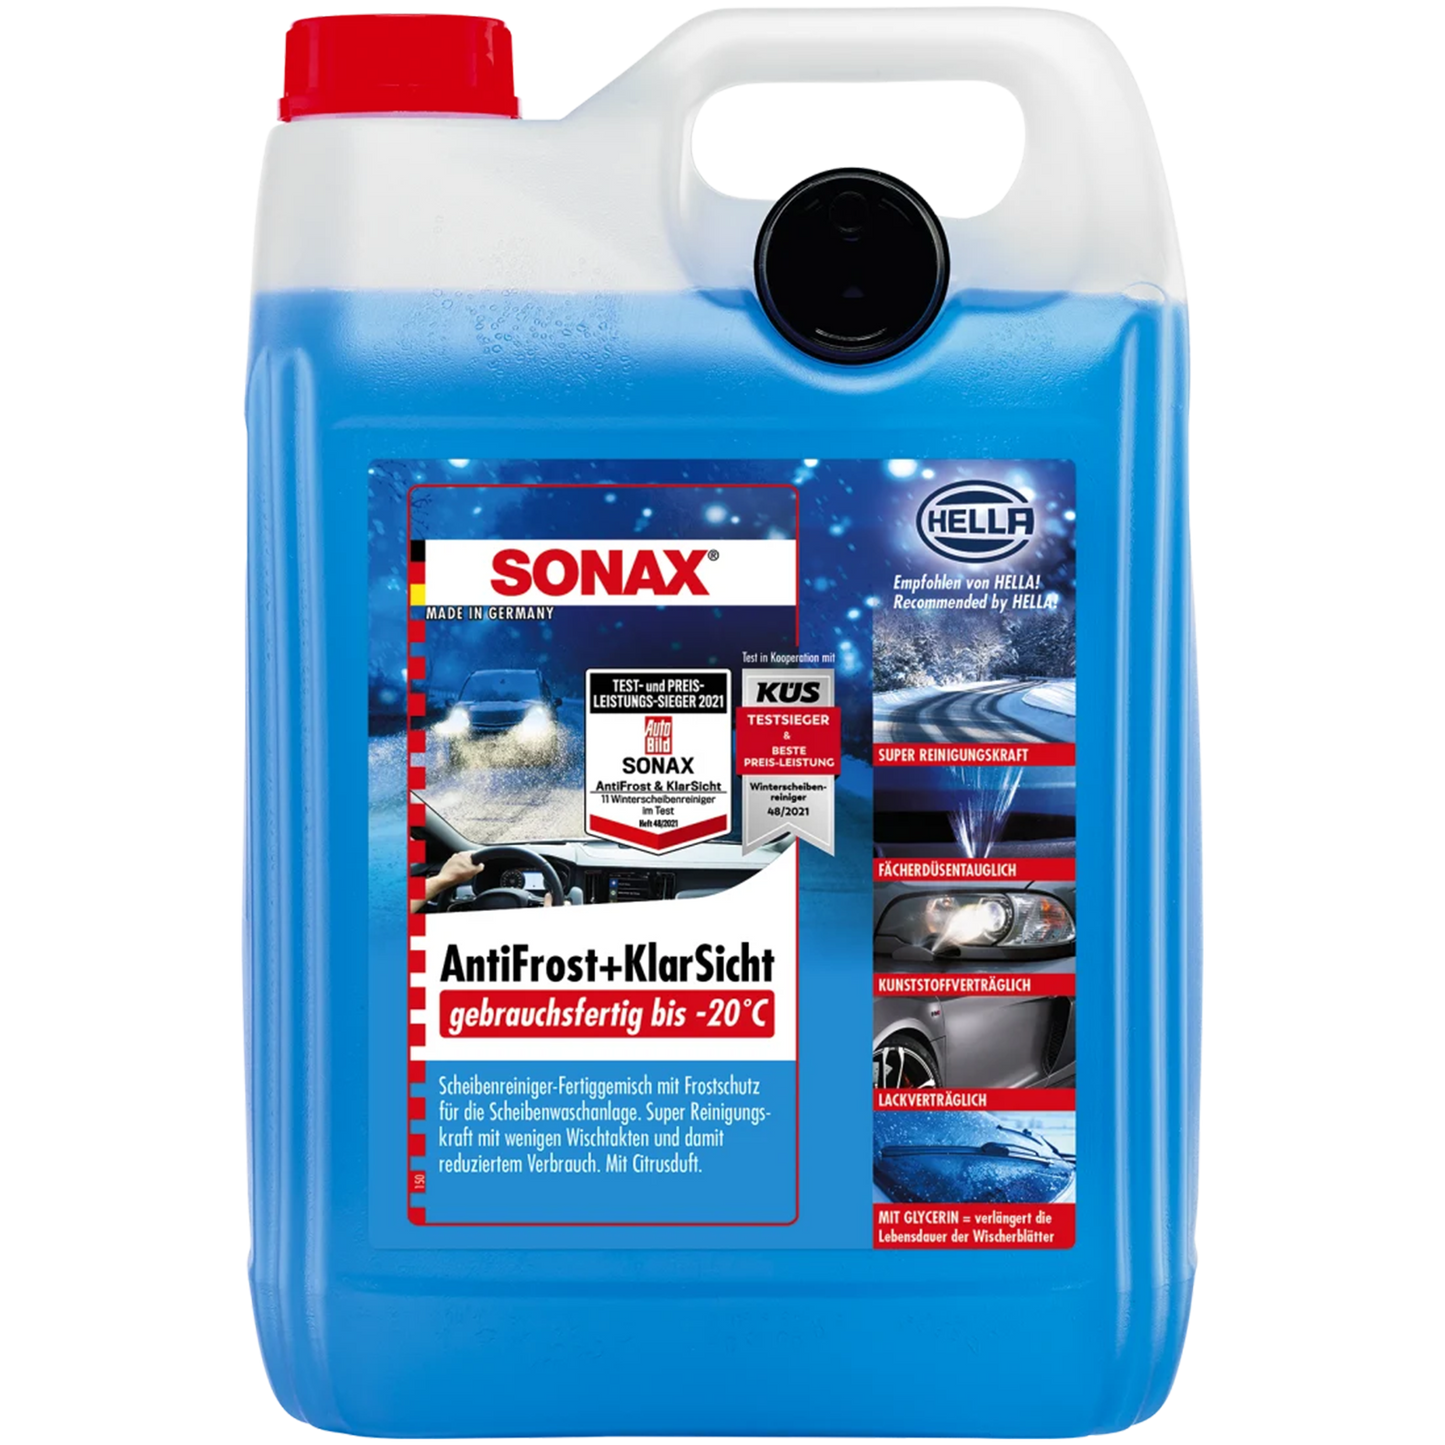 SONAX Antifrost & Klarsicht - gebrauchsfertig bis -20°C